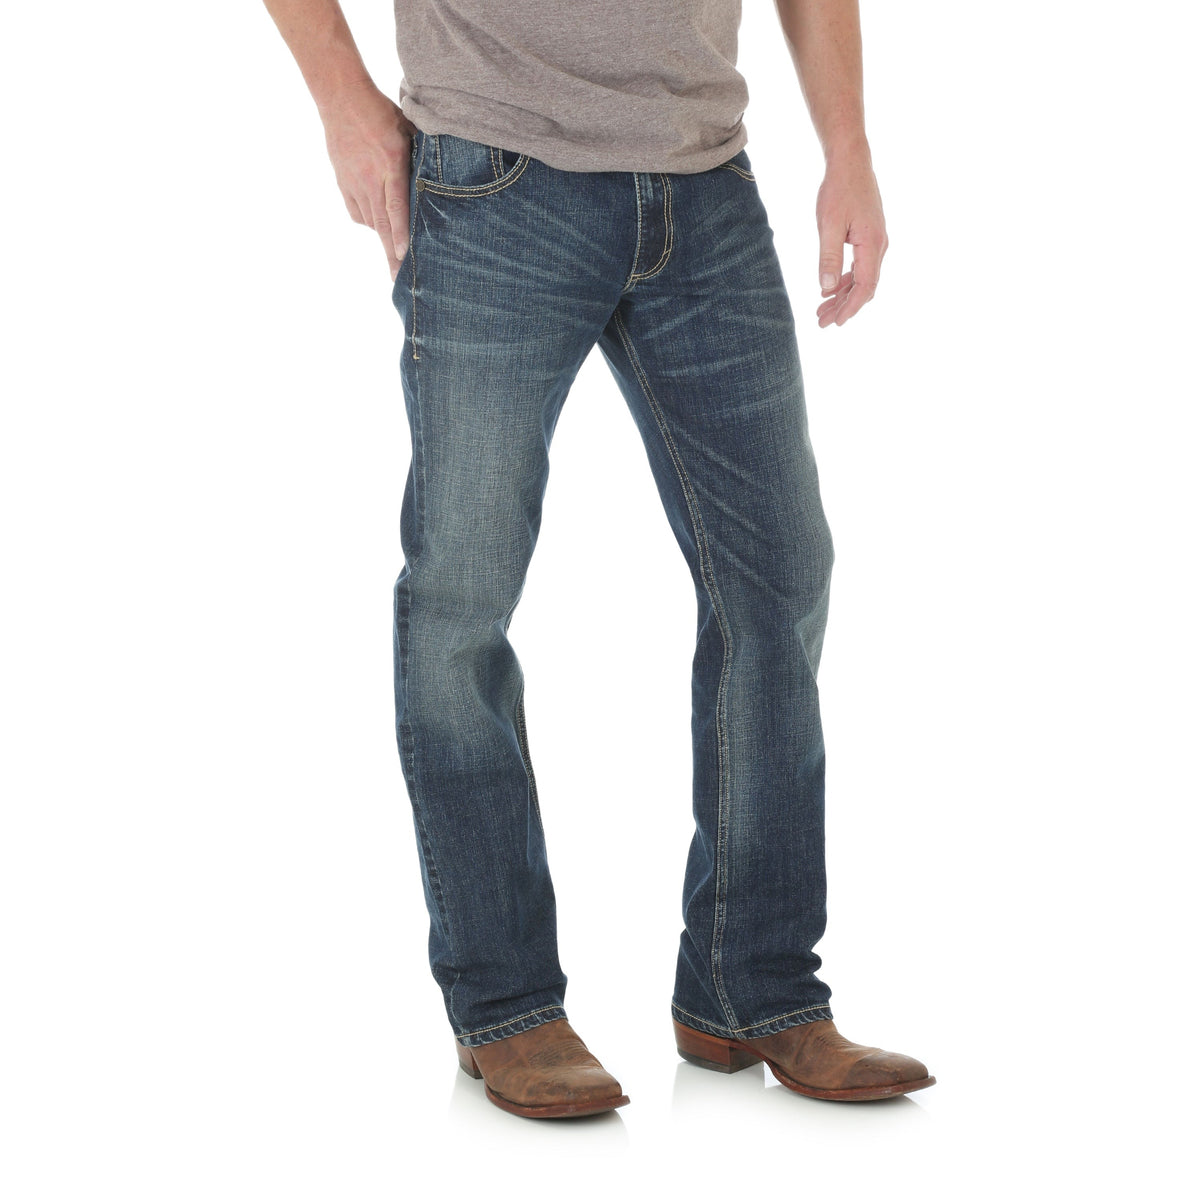 Wrangler Retro Men's Slim Fit Bootcut Jean in Layton